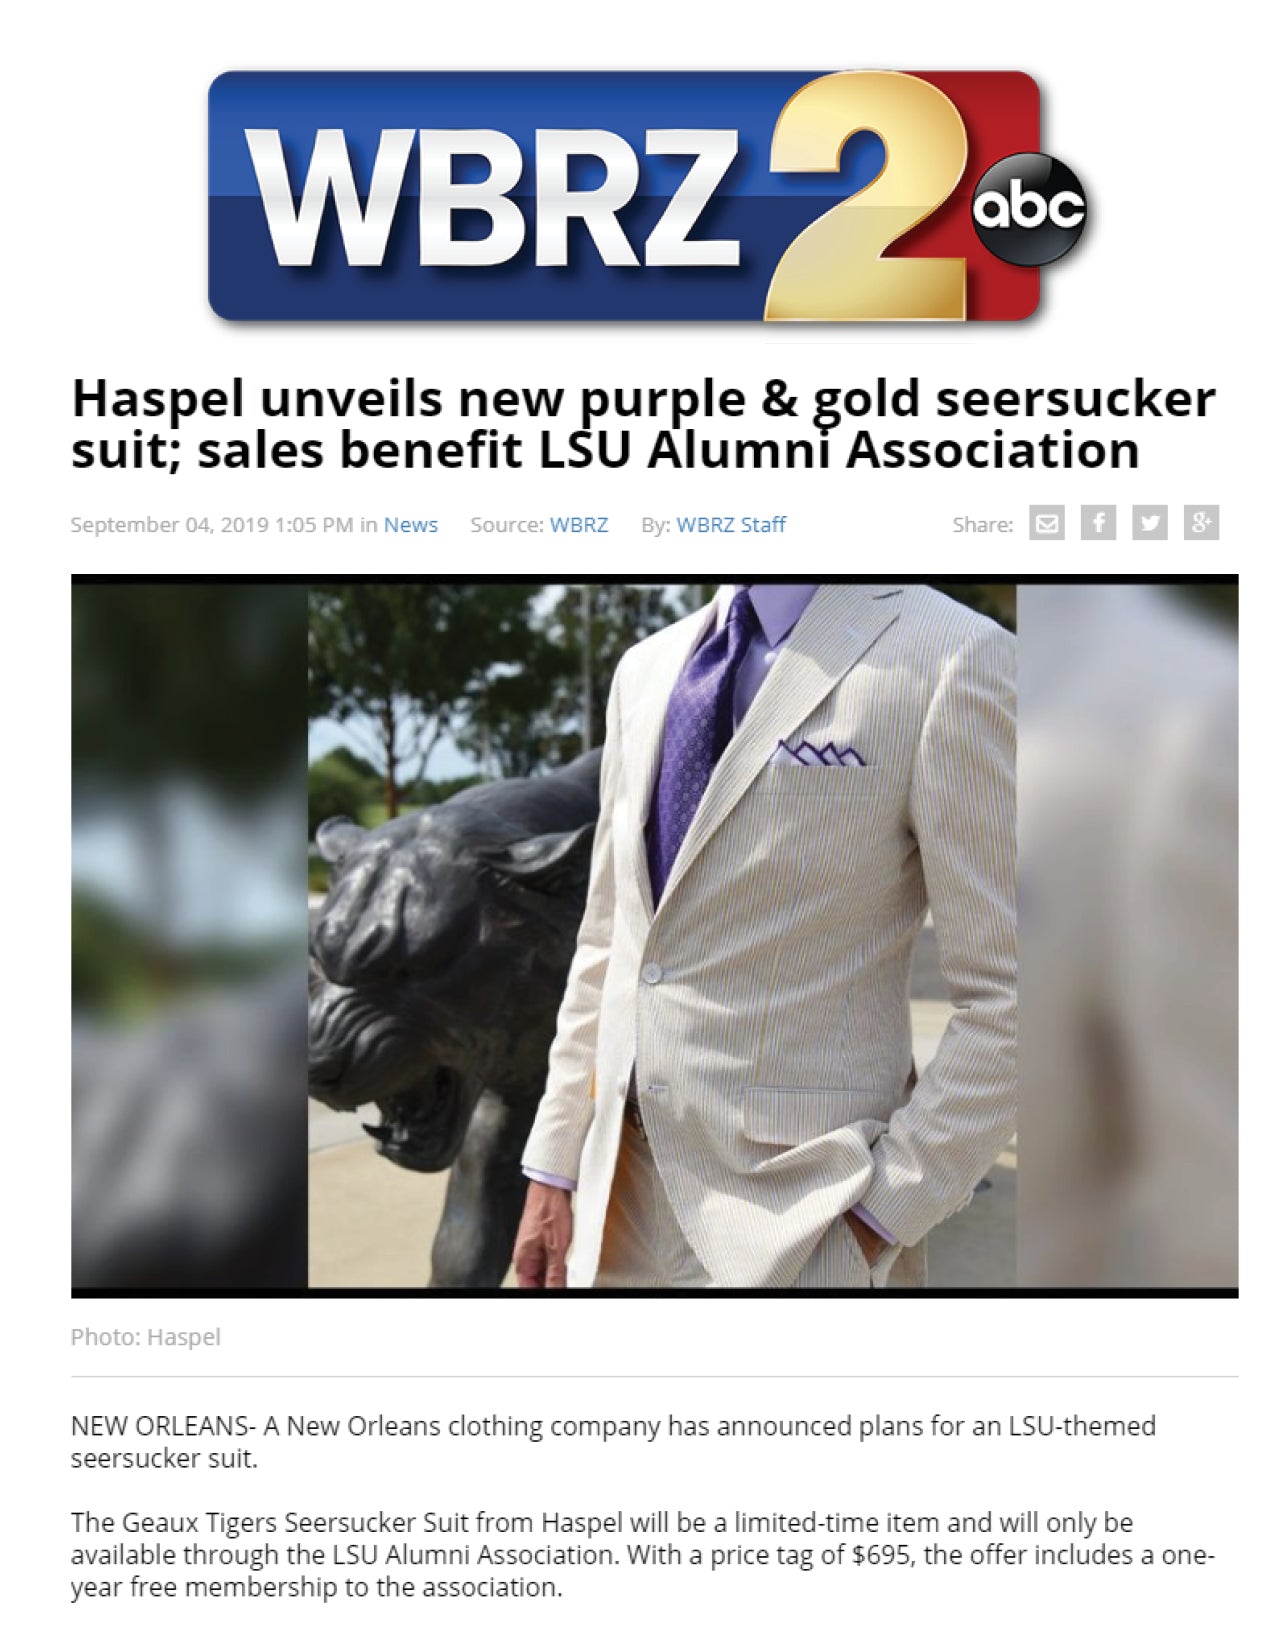 Haspel unveils new purple & gold seersucker suit | WBRZ | SEPTEMBER 2019